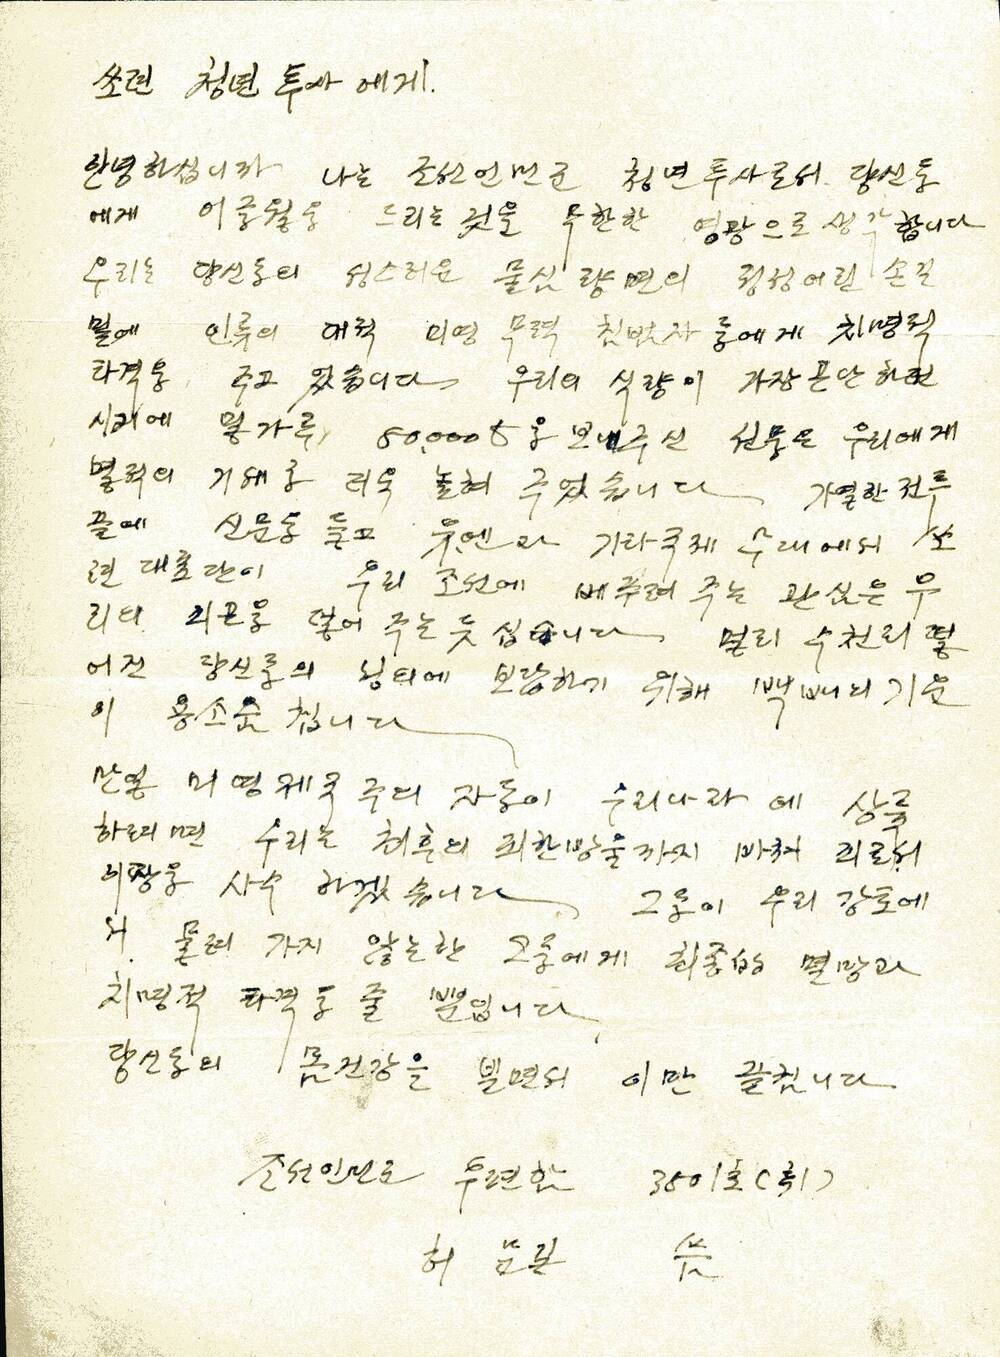 Письмо Сталину И.В. и командованию Советской армии в связи с эвакуацией Советской армии из пределов Северной Кореи с выражением пламенной любви и благодарности.